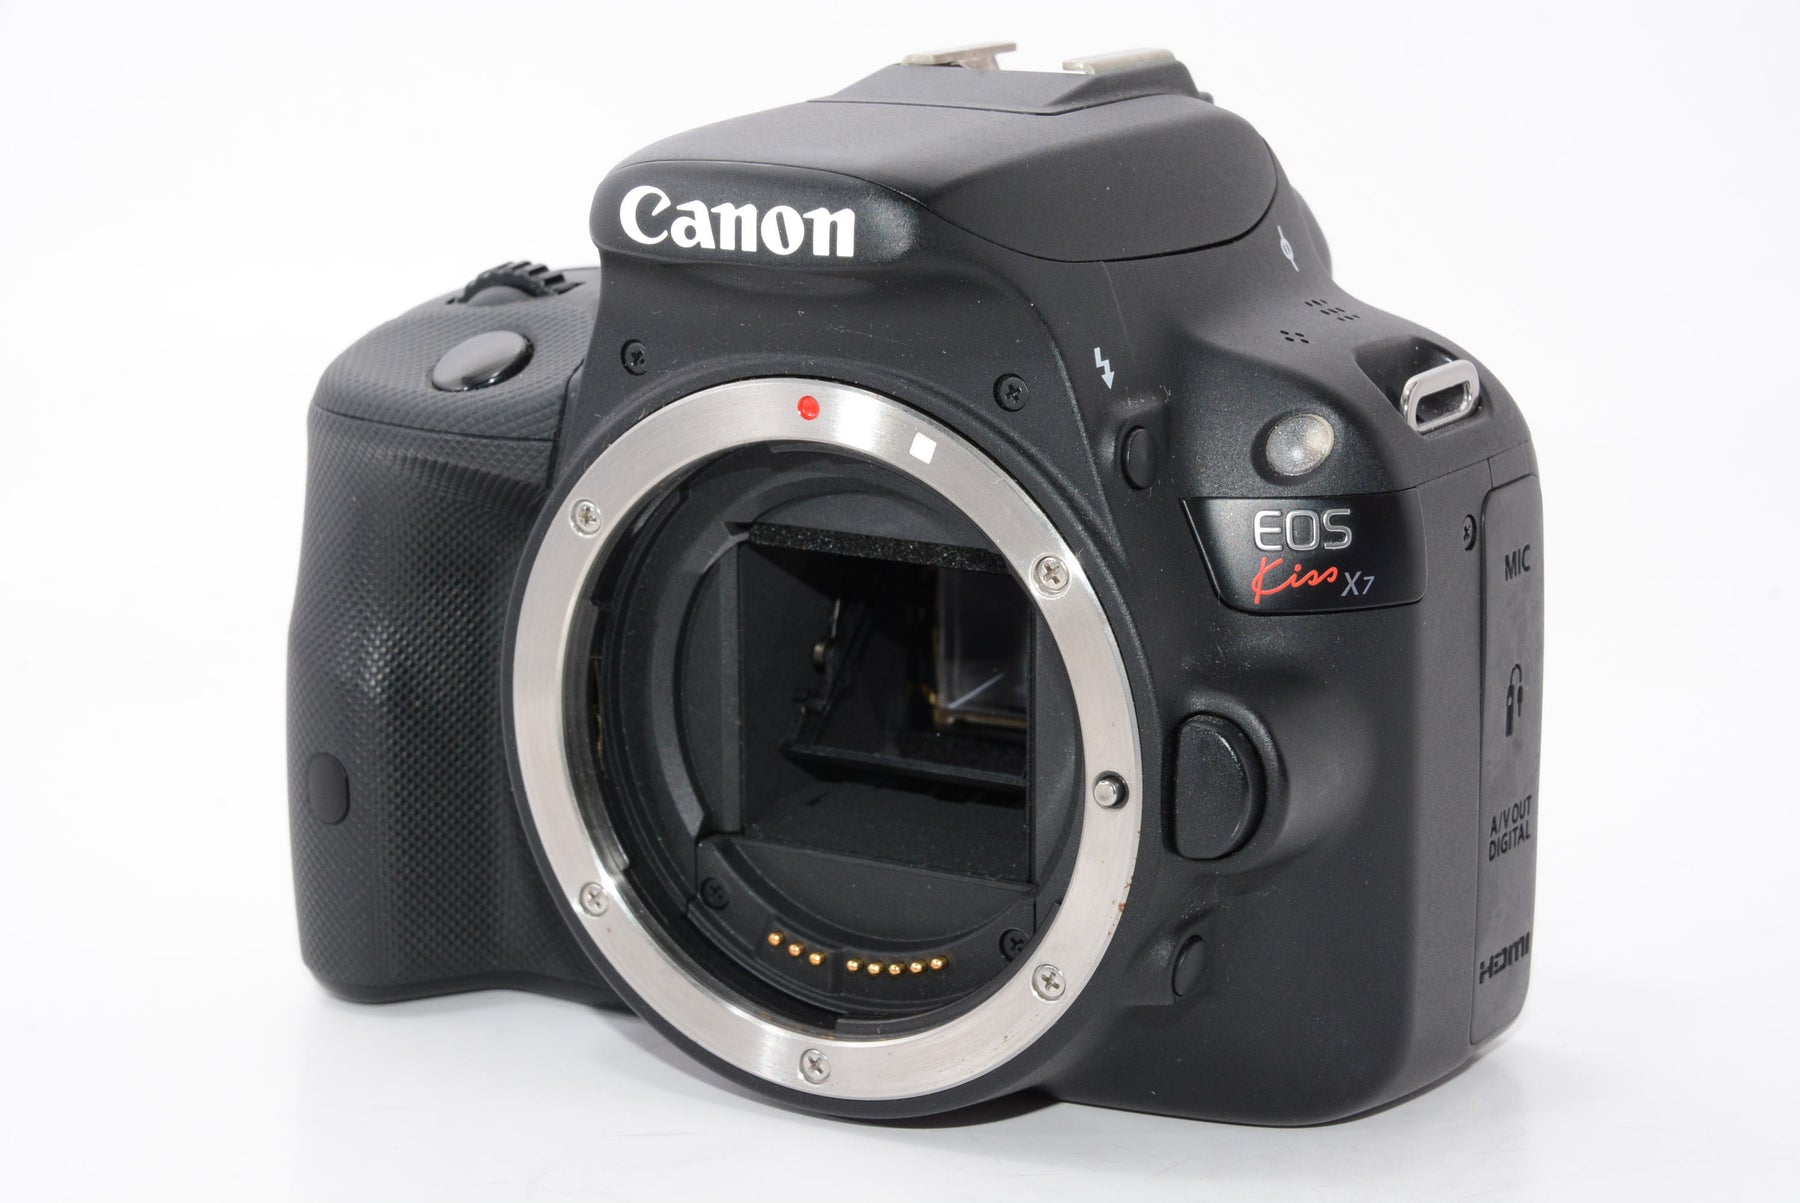 【外観特上級】Canon デジタル一眼レフカメラ EOS Kiss X7 レンズキット EF-S18-55mm F3.5-5.6 IS STM付属 KISSX7-1855ISSTMLK